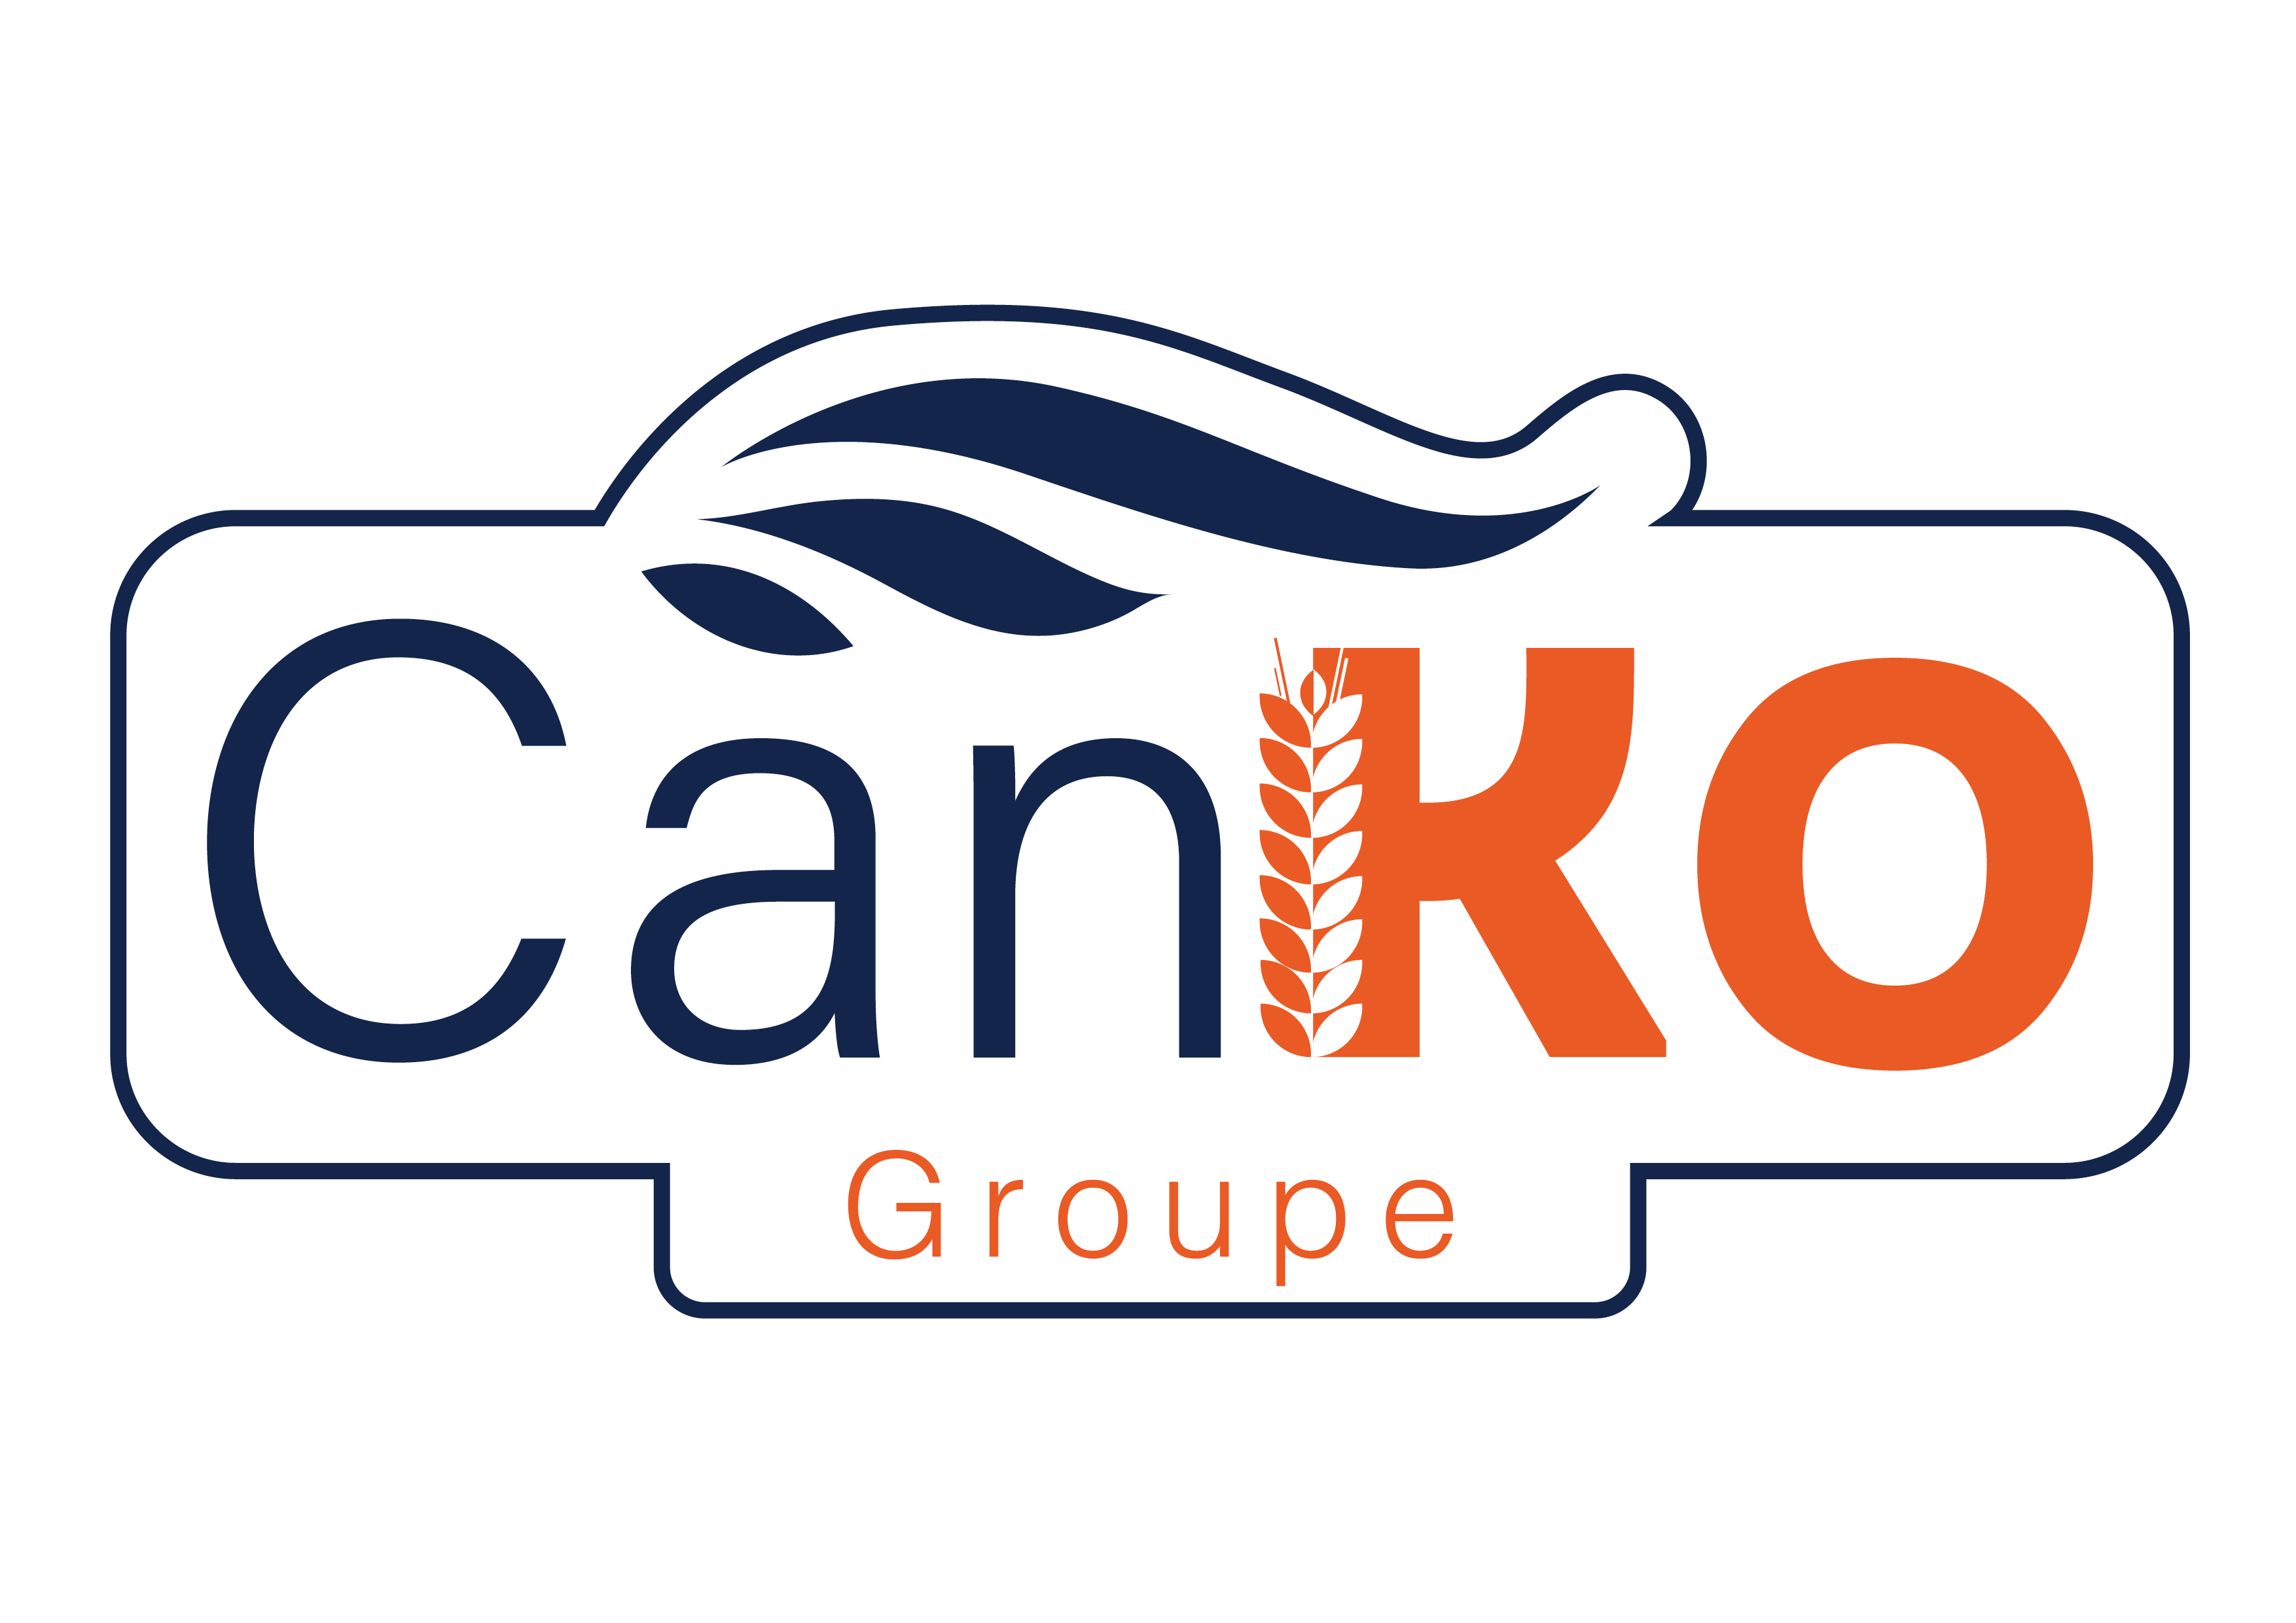 CanKo Groupe's logo